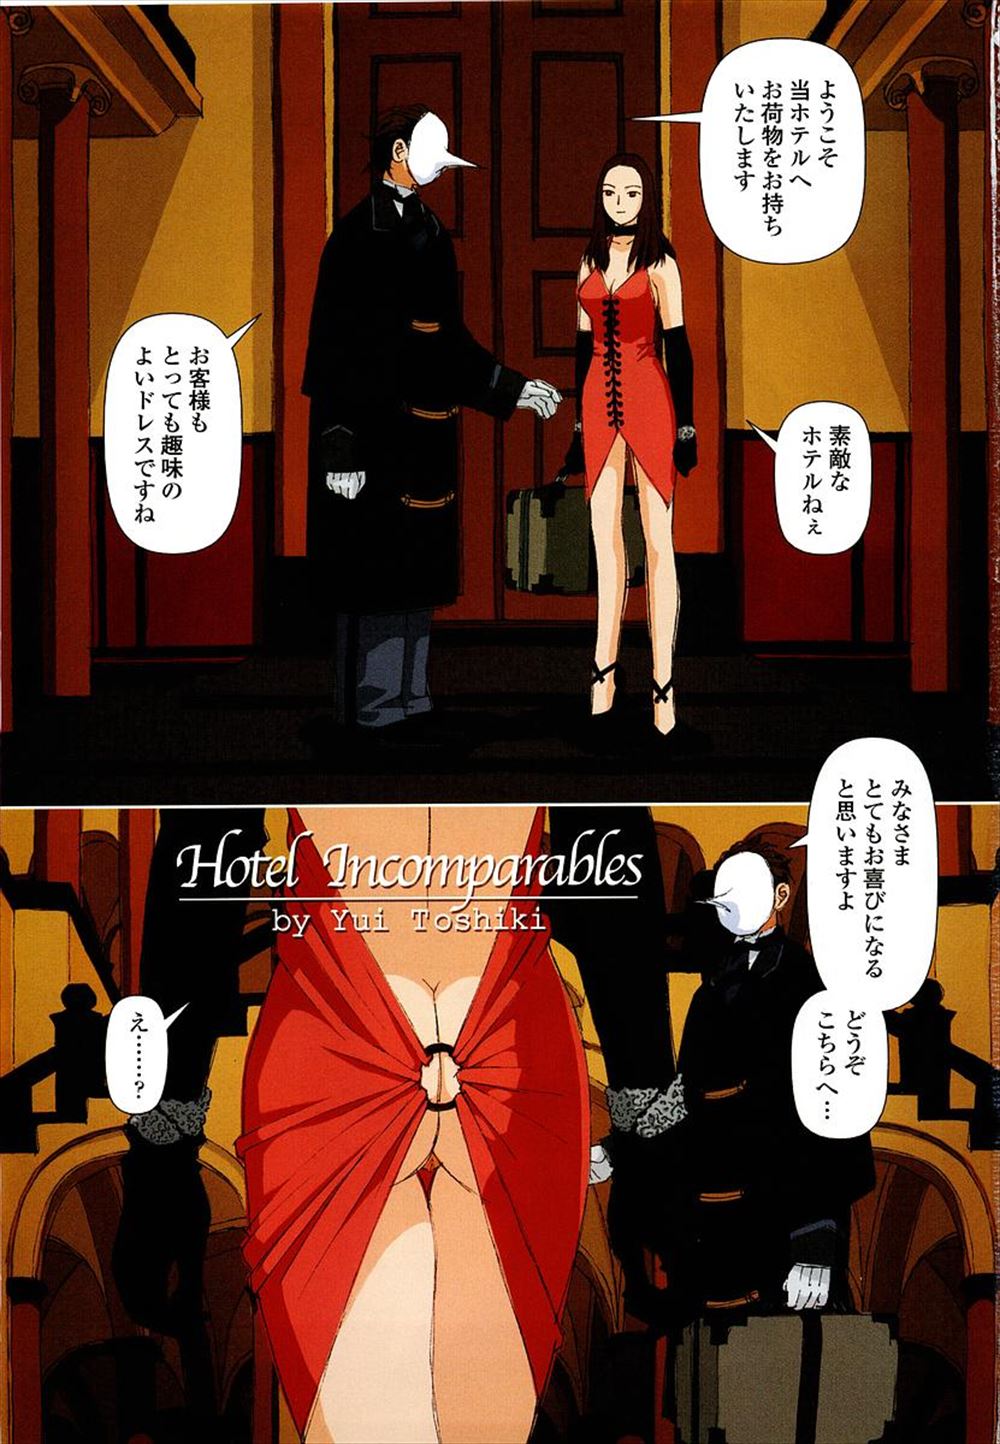 【エロ漫画】変態紳士が集まるホテルにチェックインした半裸のノーパン姿の巨乳お嬢様が変態紳士にいきなりちんぽを挿入される